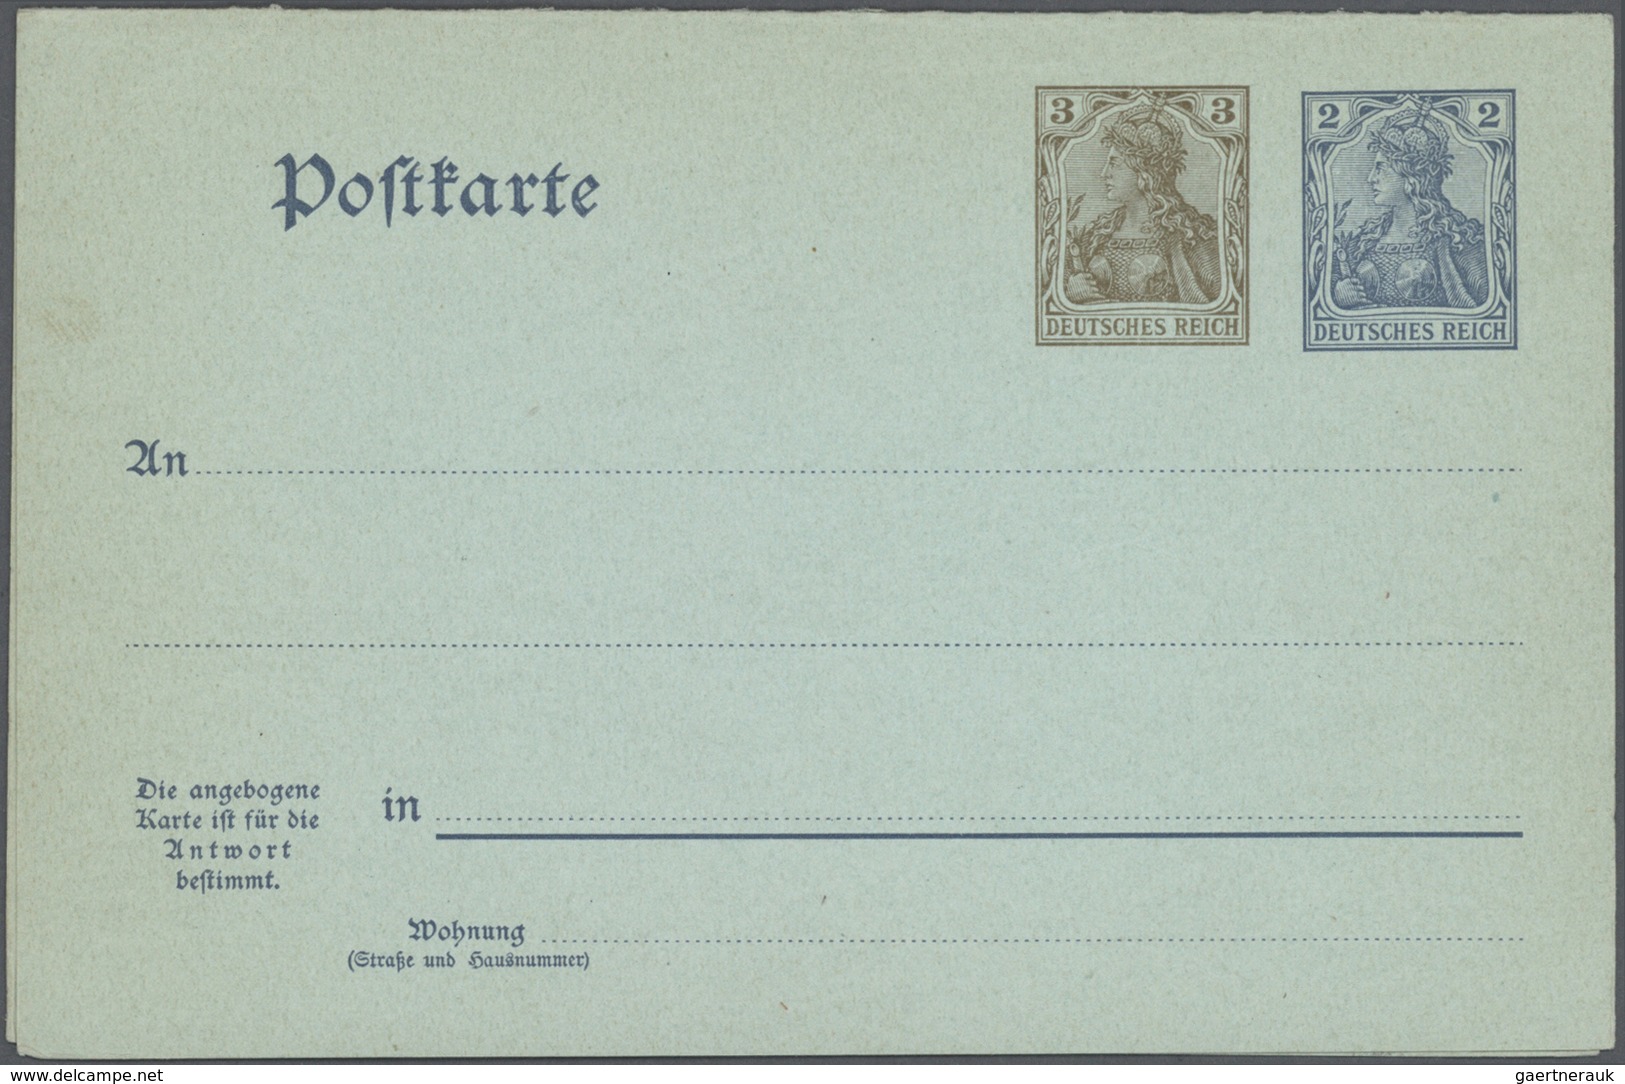 31760 Deutsches Reich - Ganzsachen: 1875/1932, umfangreiche, ungebrauchte und gebrauchte Ganzsachenkarten-